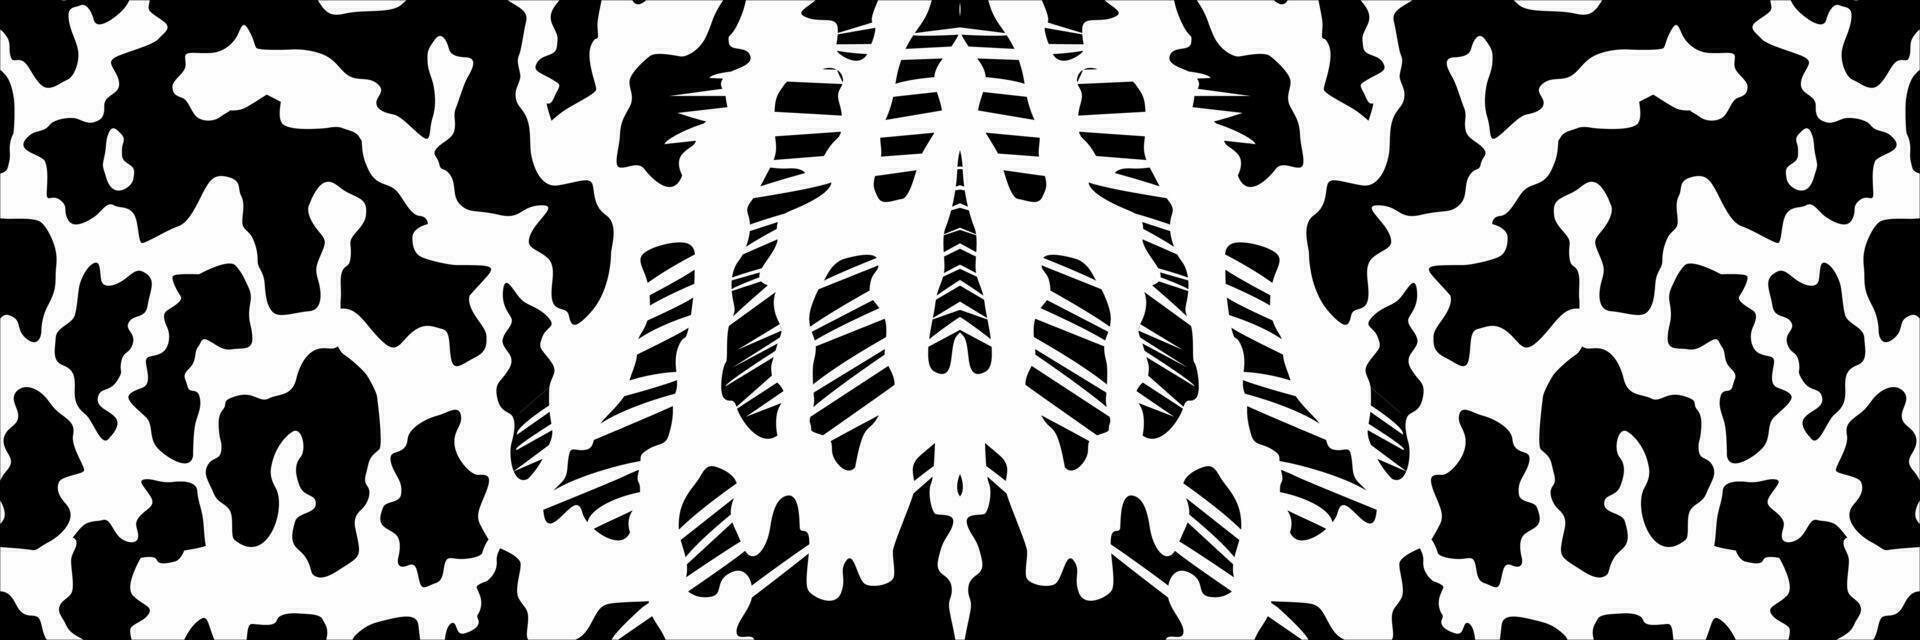 künstlerisch Motive Muster inspiriert durch symphysodon oder Diskus Fisch Haut, zum Dekoration, aufwendig, Hintergrund, Webseite, Hintergrund, Mode, Innere, Abdeckung, Tier drucken, oder Grafik Design Element vektor